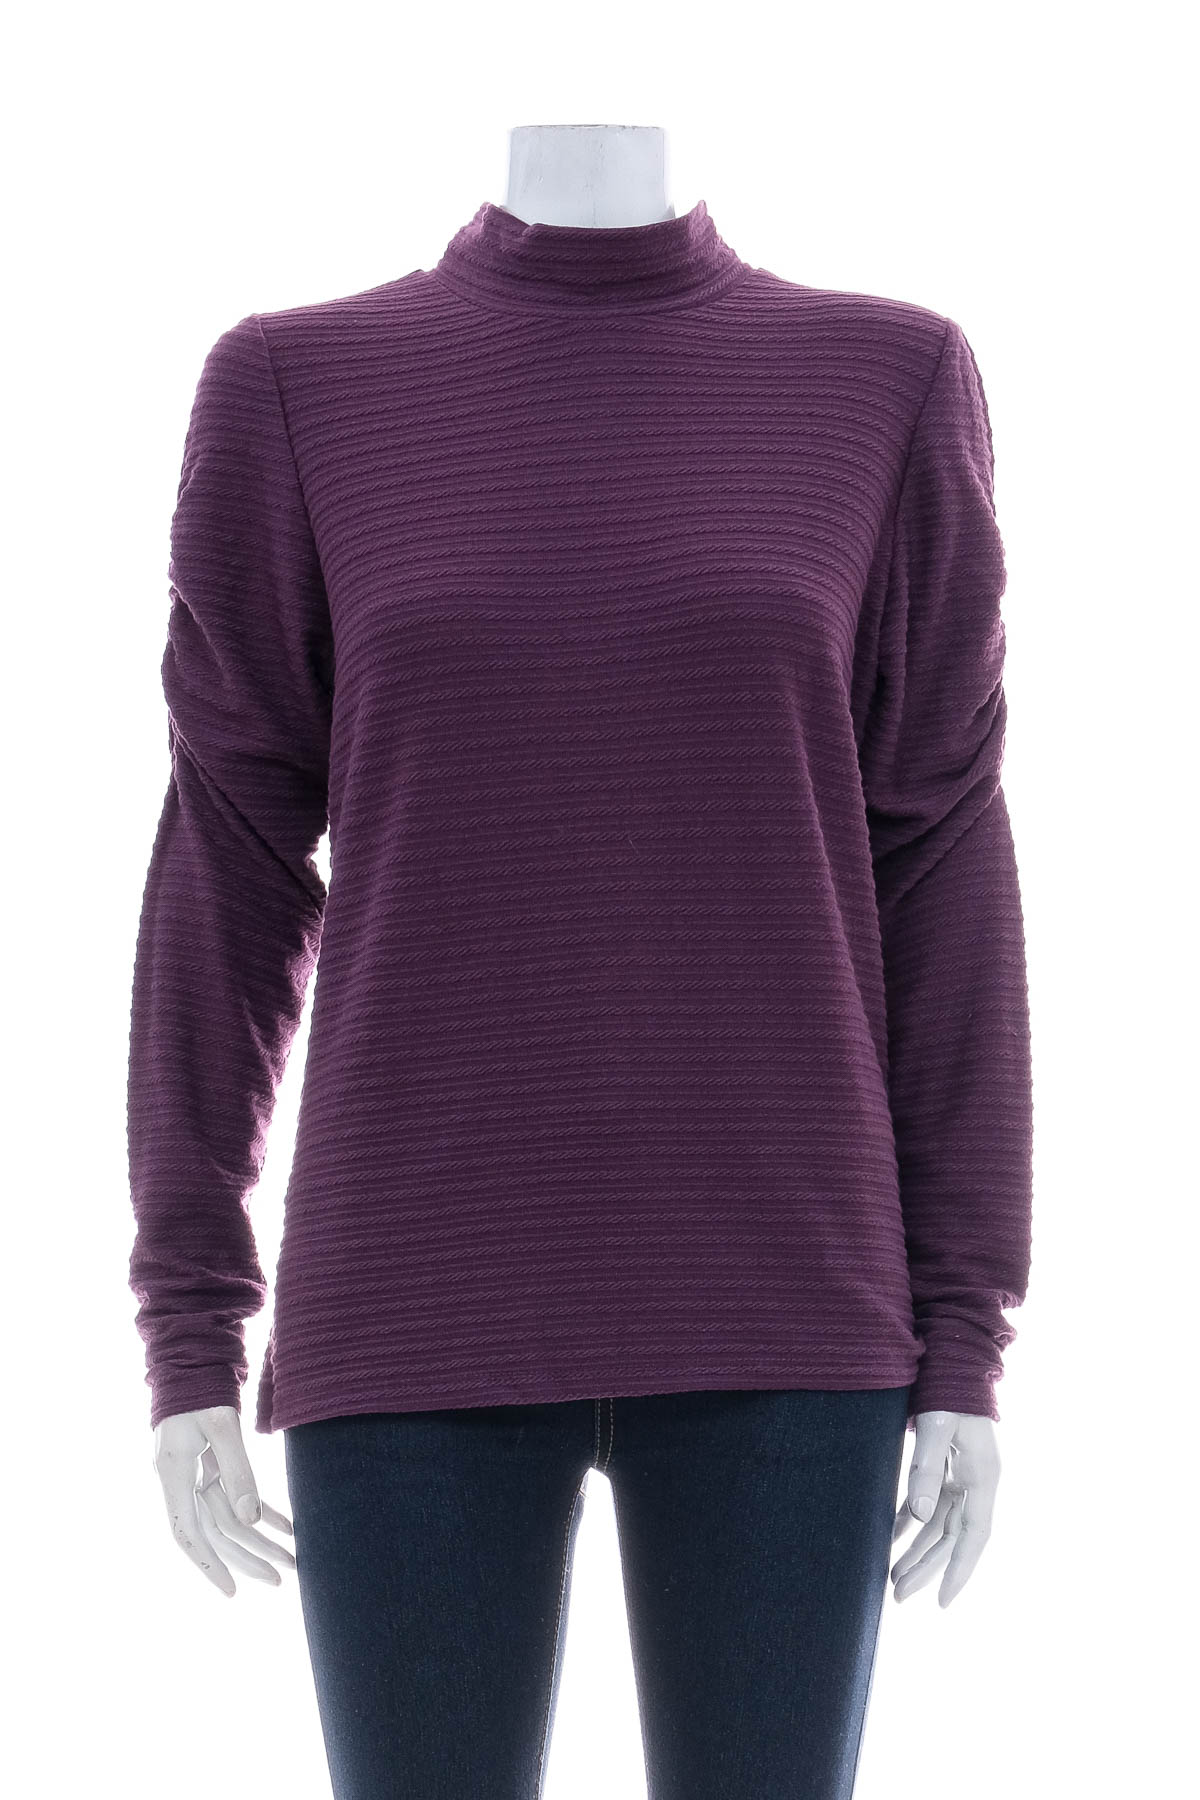 Women's sweater - Ophelia Roe - 0